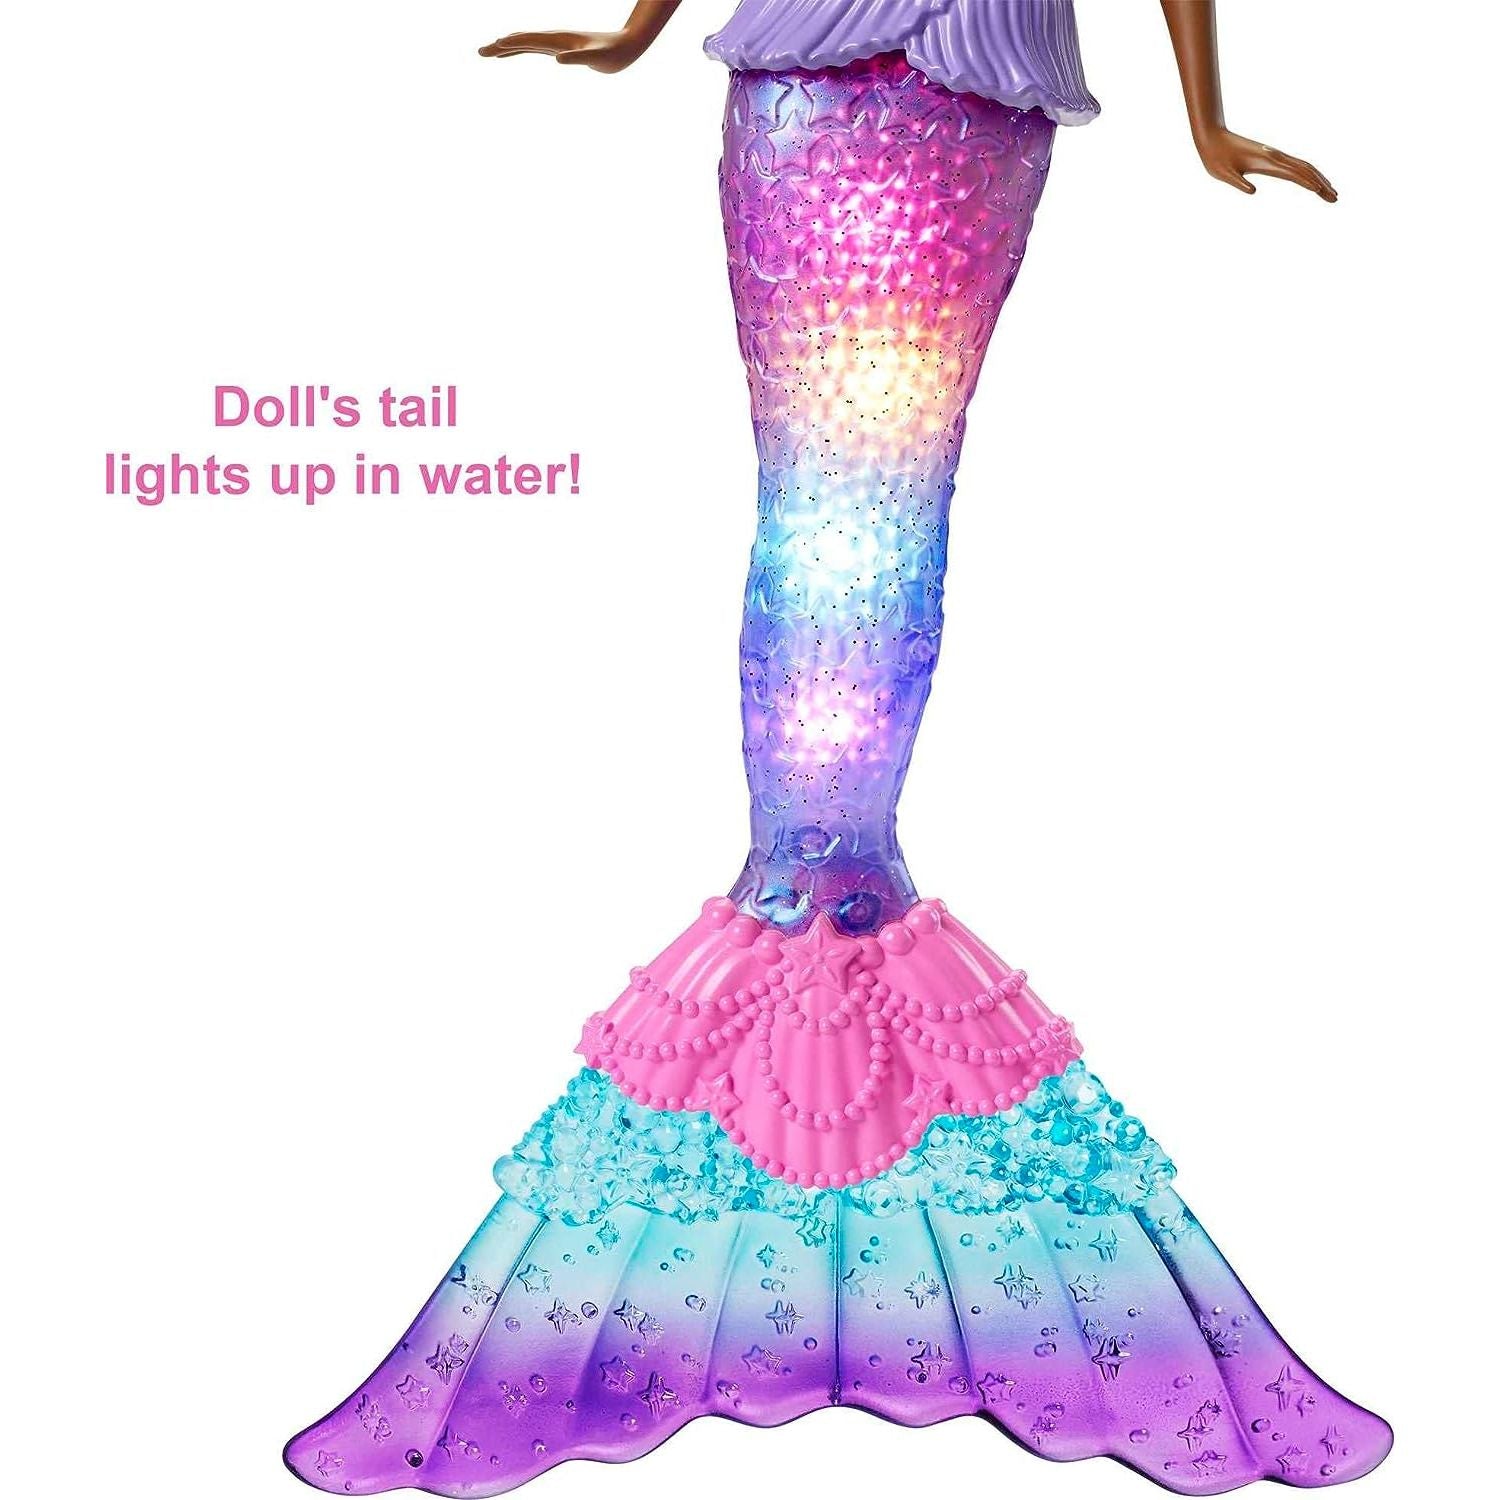 دمية باربي دريمتوبيا، لعبة حورية البحر مع ذيل مضيء يعمل بالماء، وشعر مخطط باللون الأرجواني و4 عروض ضوئية ملونة